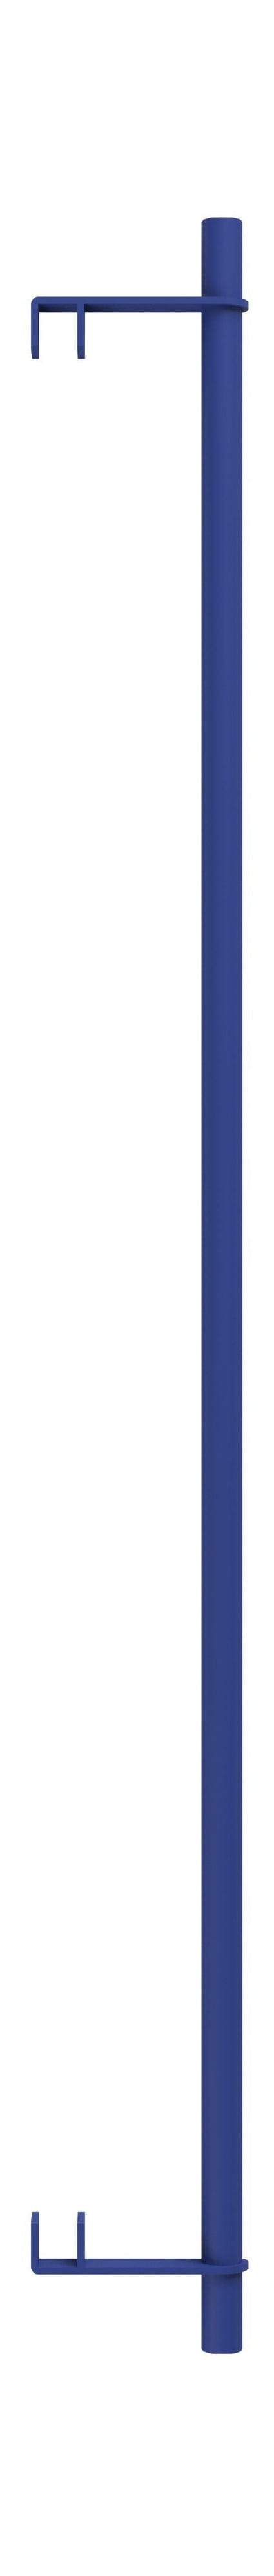 Moebe Hyllsystem/vägg hyllkläder bar 85 cm, djupblå